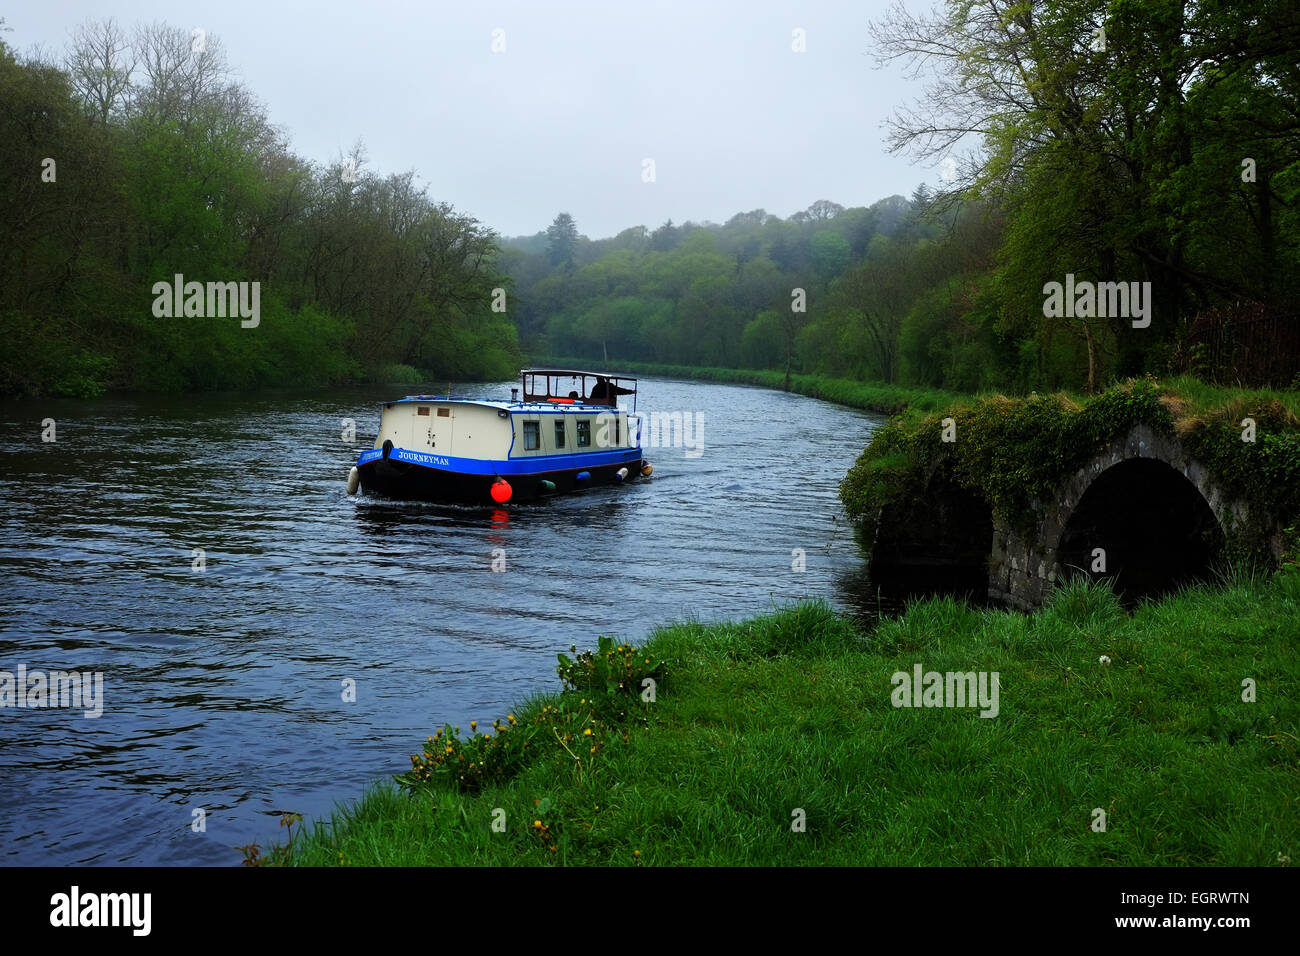 A barge on the river Barrow near Graignamanagh Stock Photo